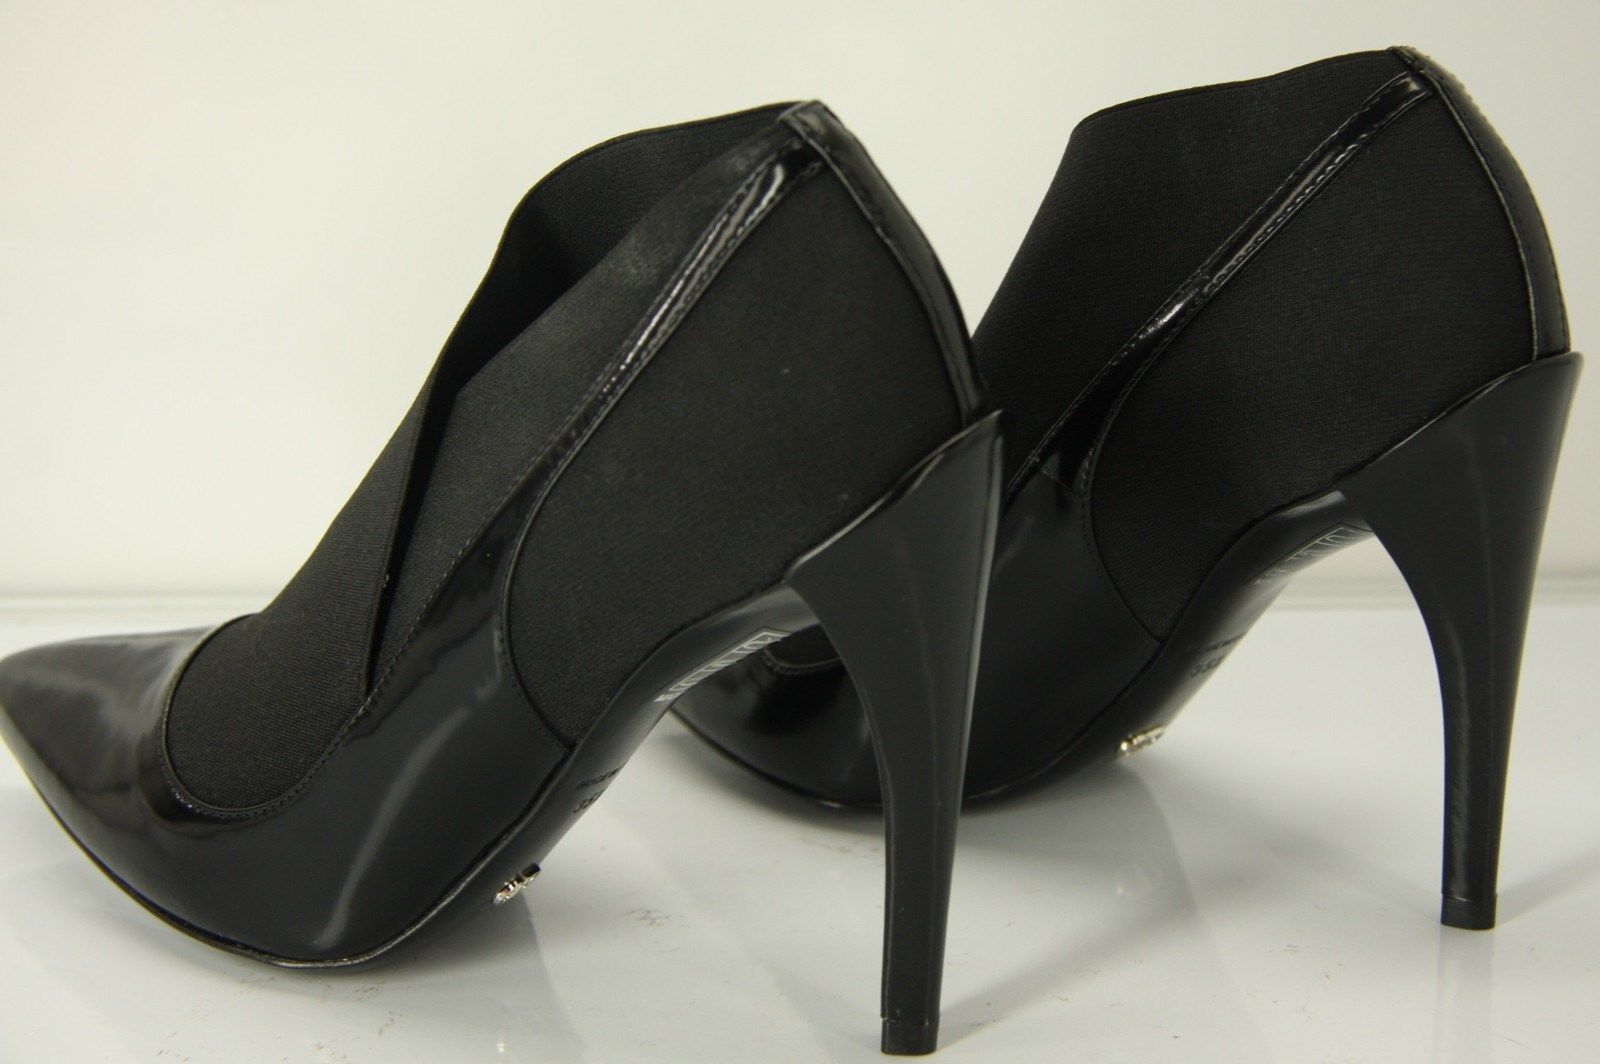 Christian Dior Elastic Strap Pointy Toe Pumps size 35.5 NIB High Heels $950